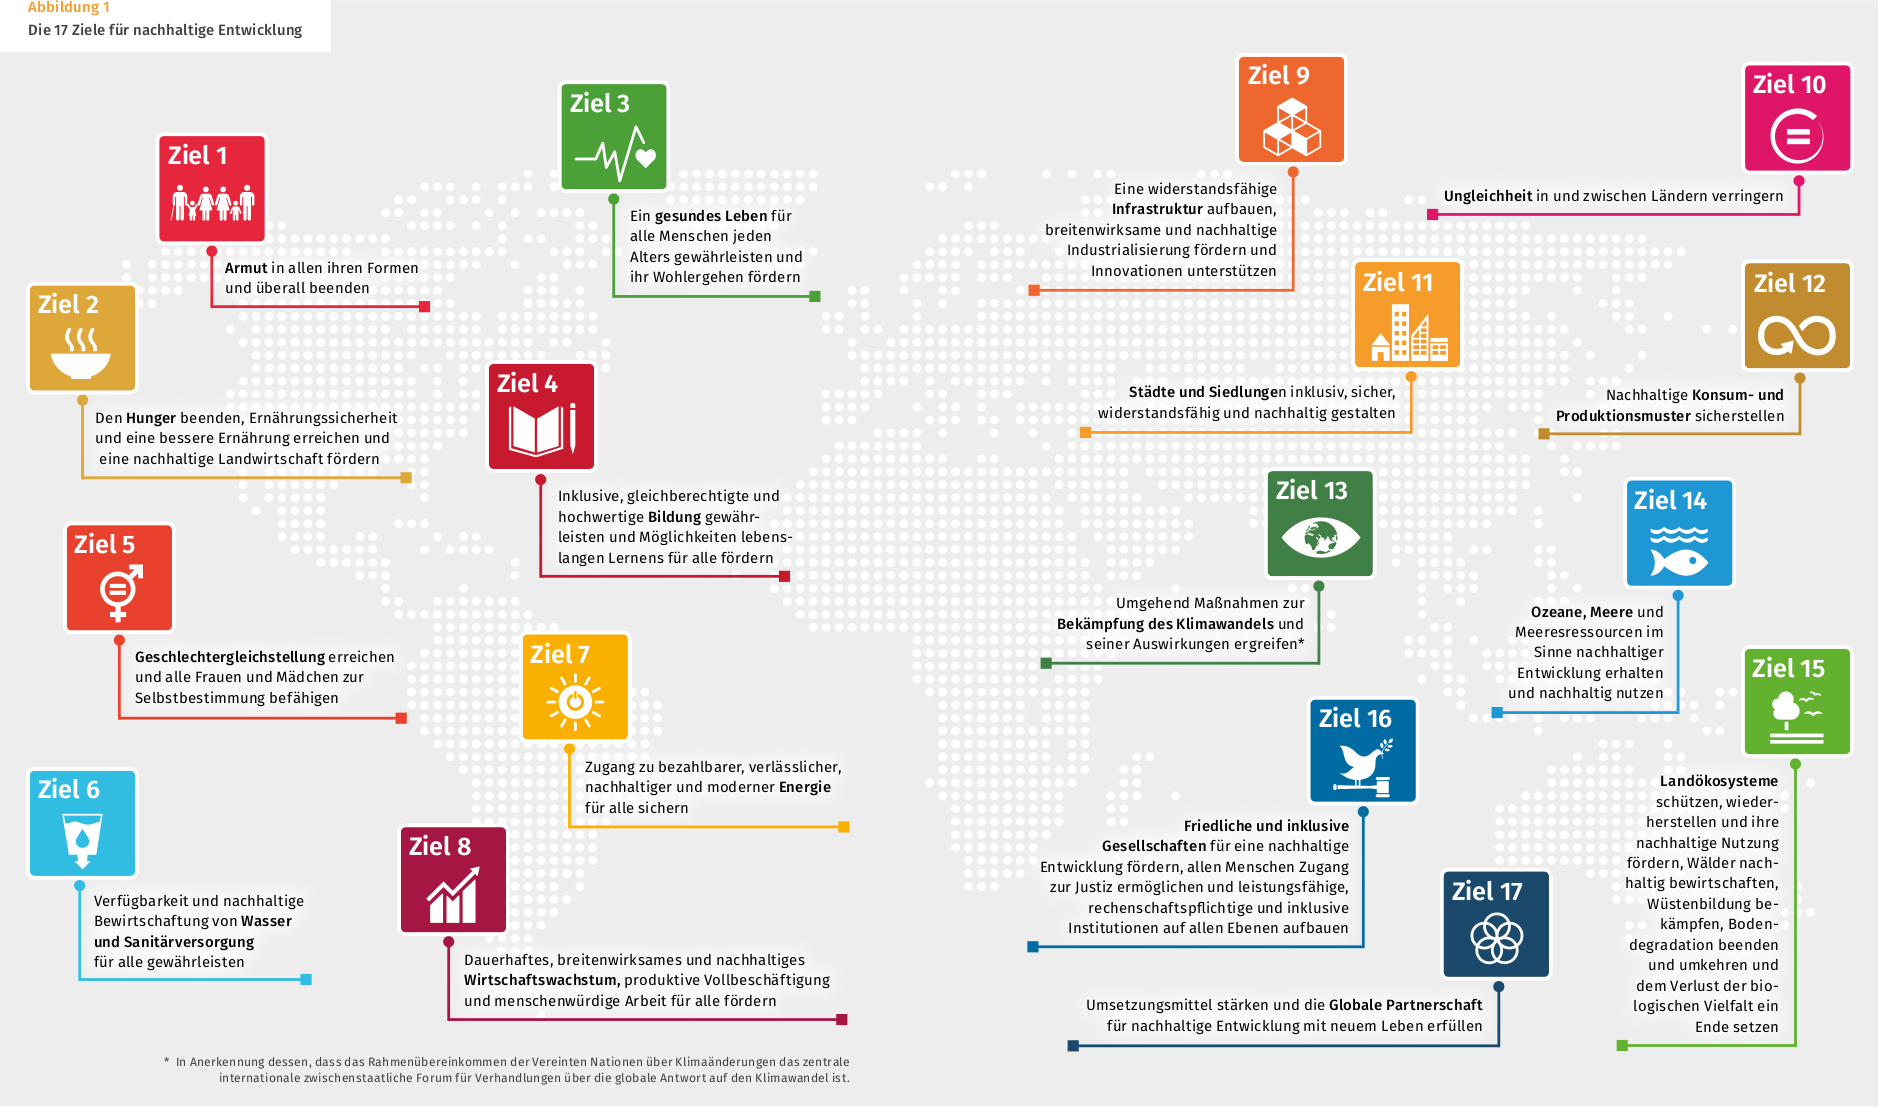 So geht Nachhaltigkeit! Ein Überblick | 2030 Bericht